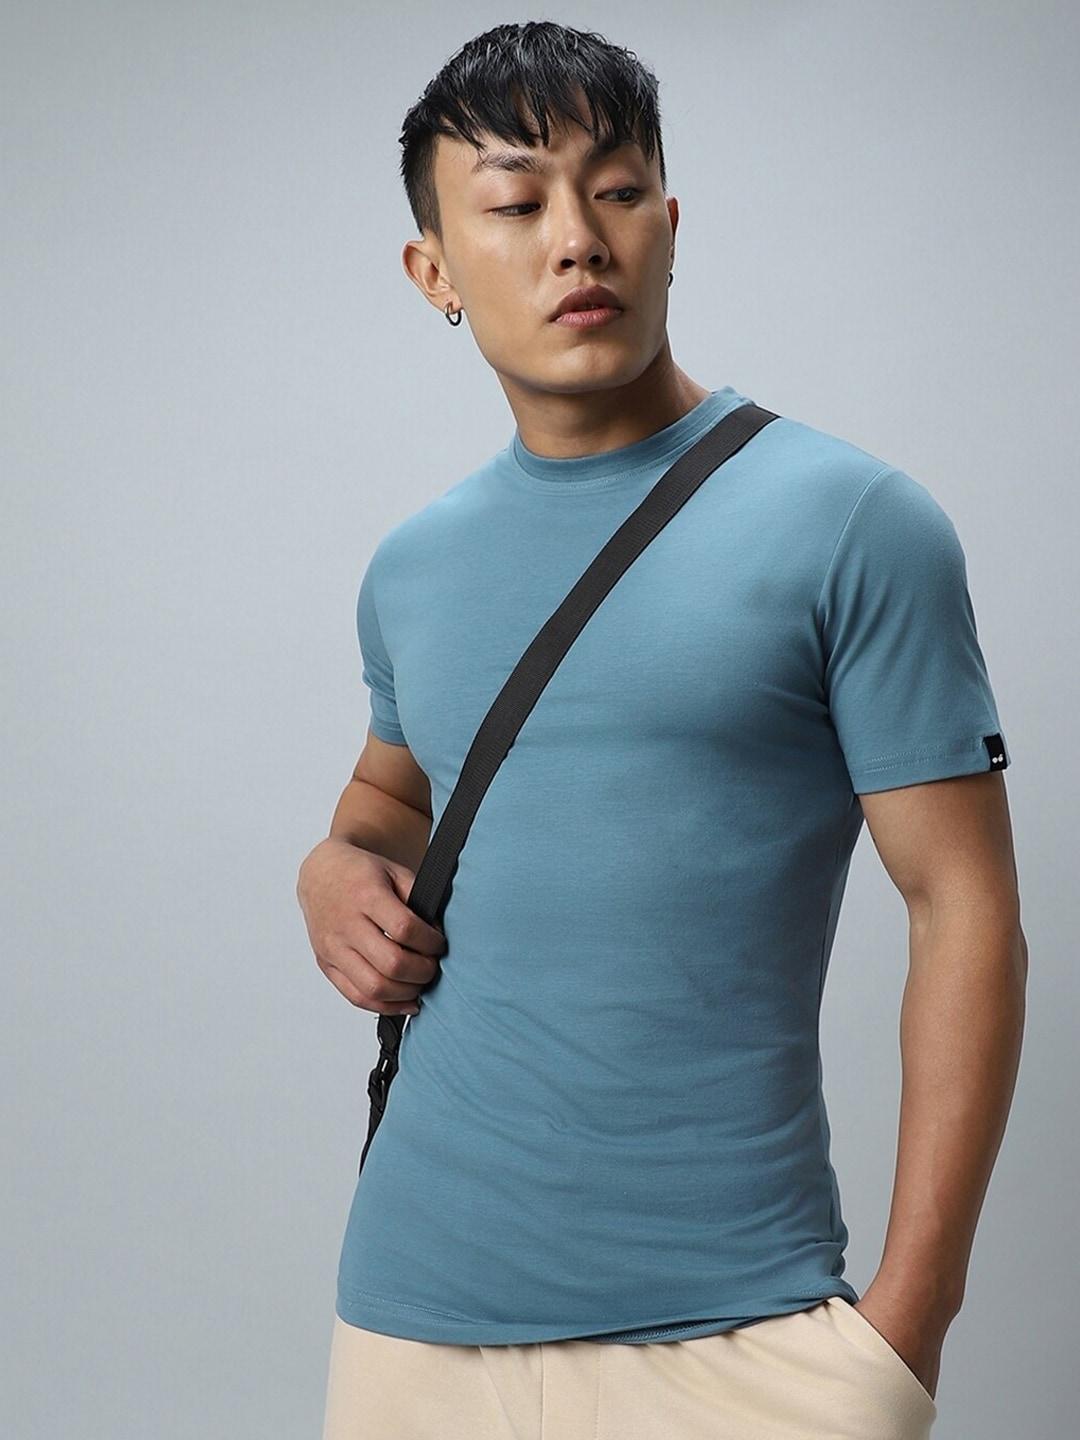 Bewakoof Blue Muscle Fit T-shirt